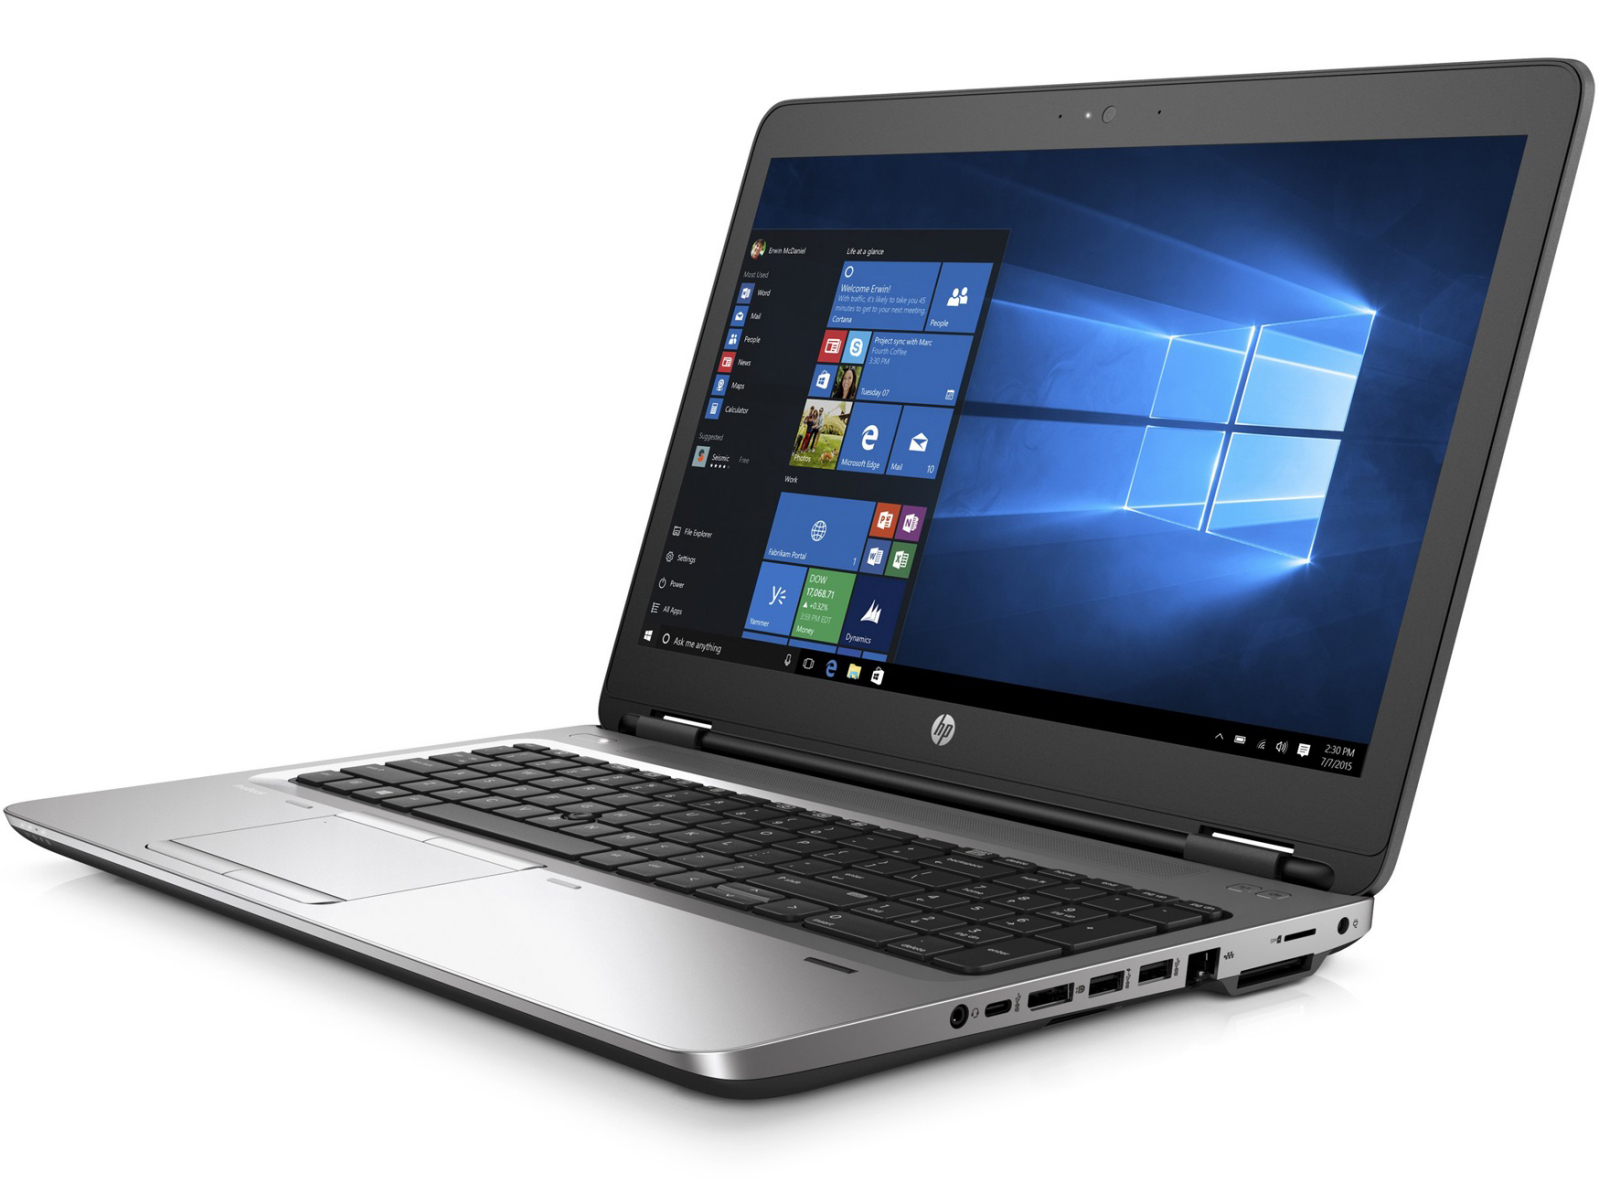 HP ProBook 650 G2 Intel i5 6300U 2.40GHz 8GB RAM 128GB SSD 15.6" Win 10 - B Grade Full Size Image